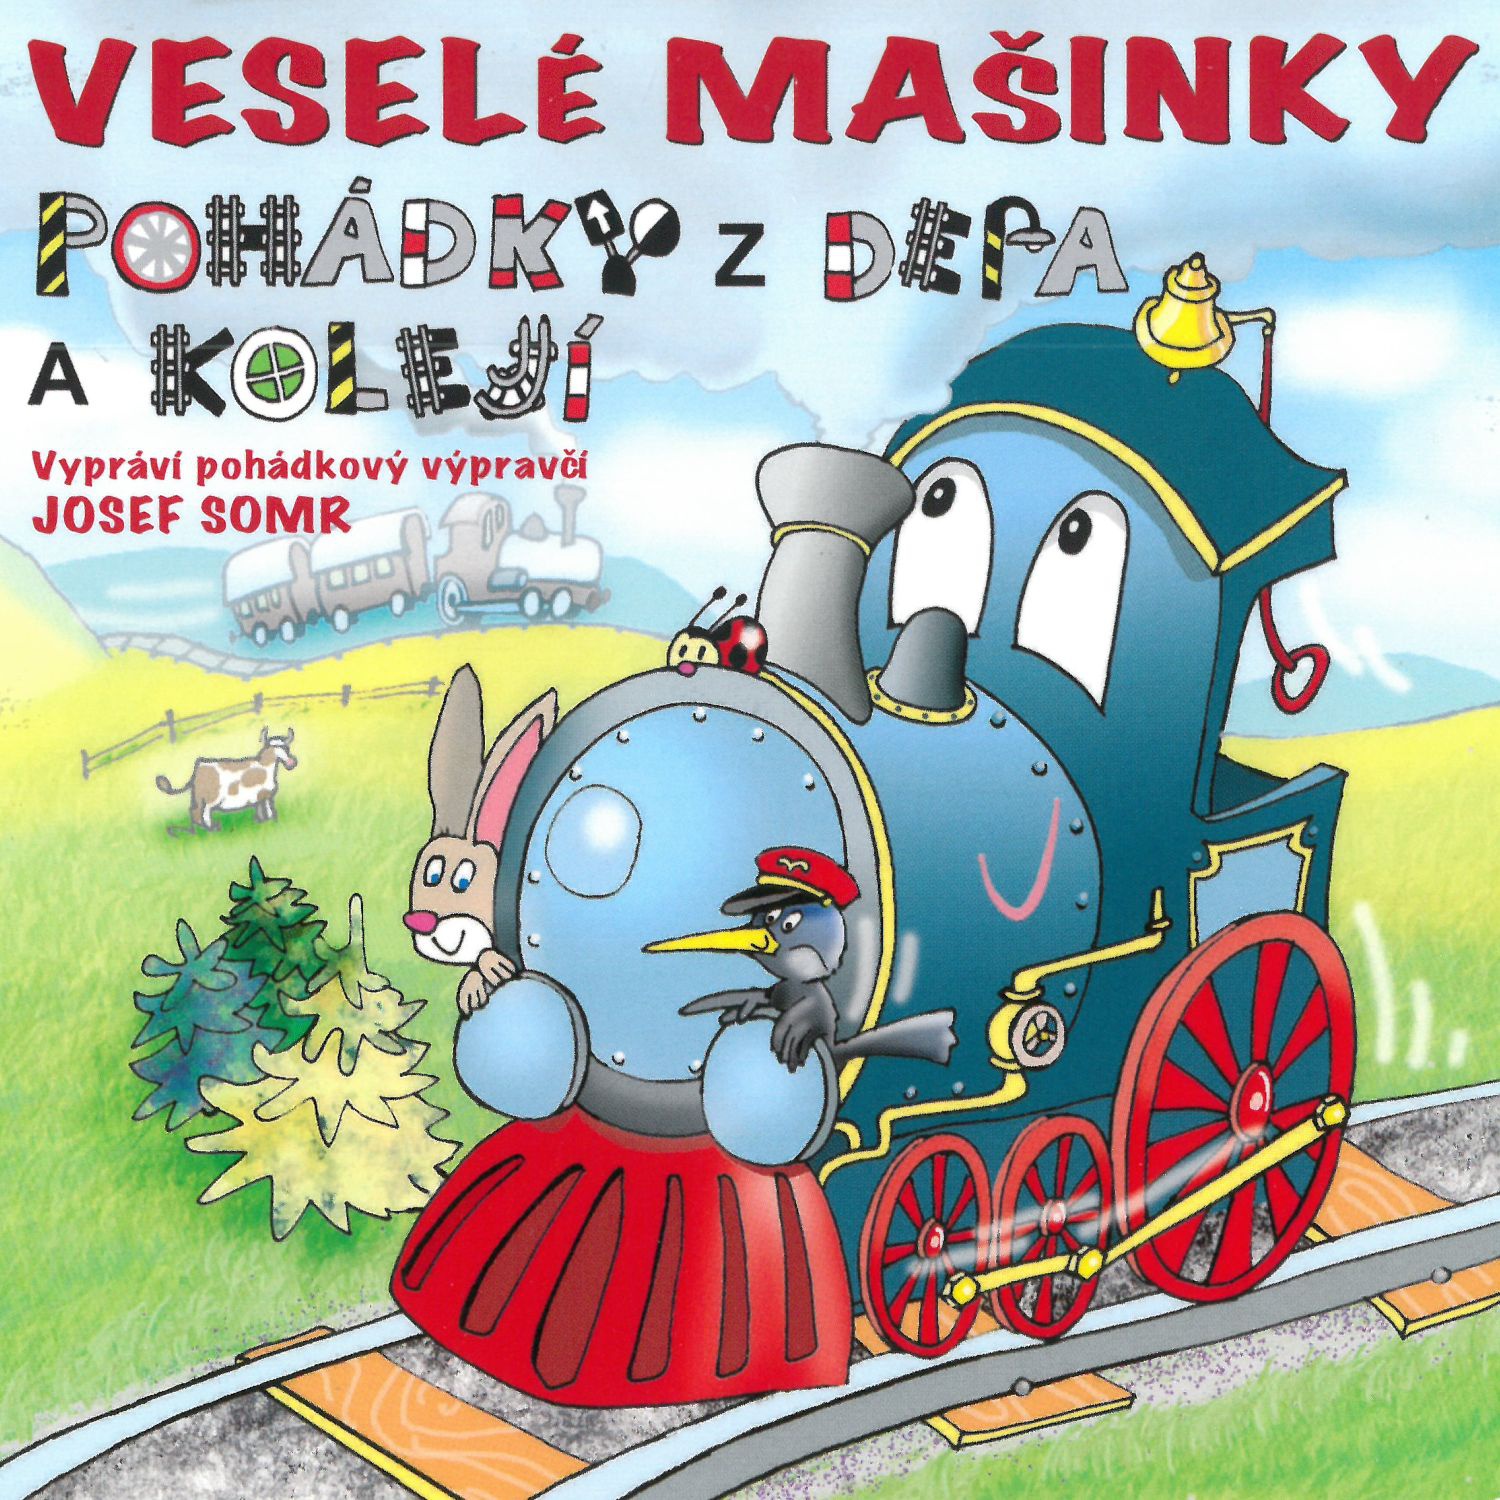 CD Shop - ROZPRAVKA VESELE MASINKY / JOSEF SOMR (CESKY JAZYK)